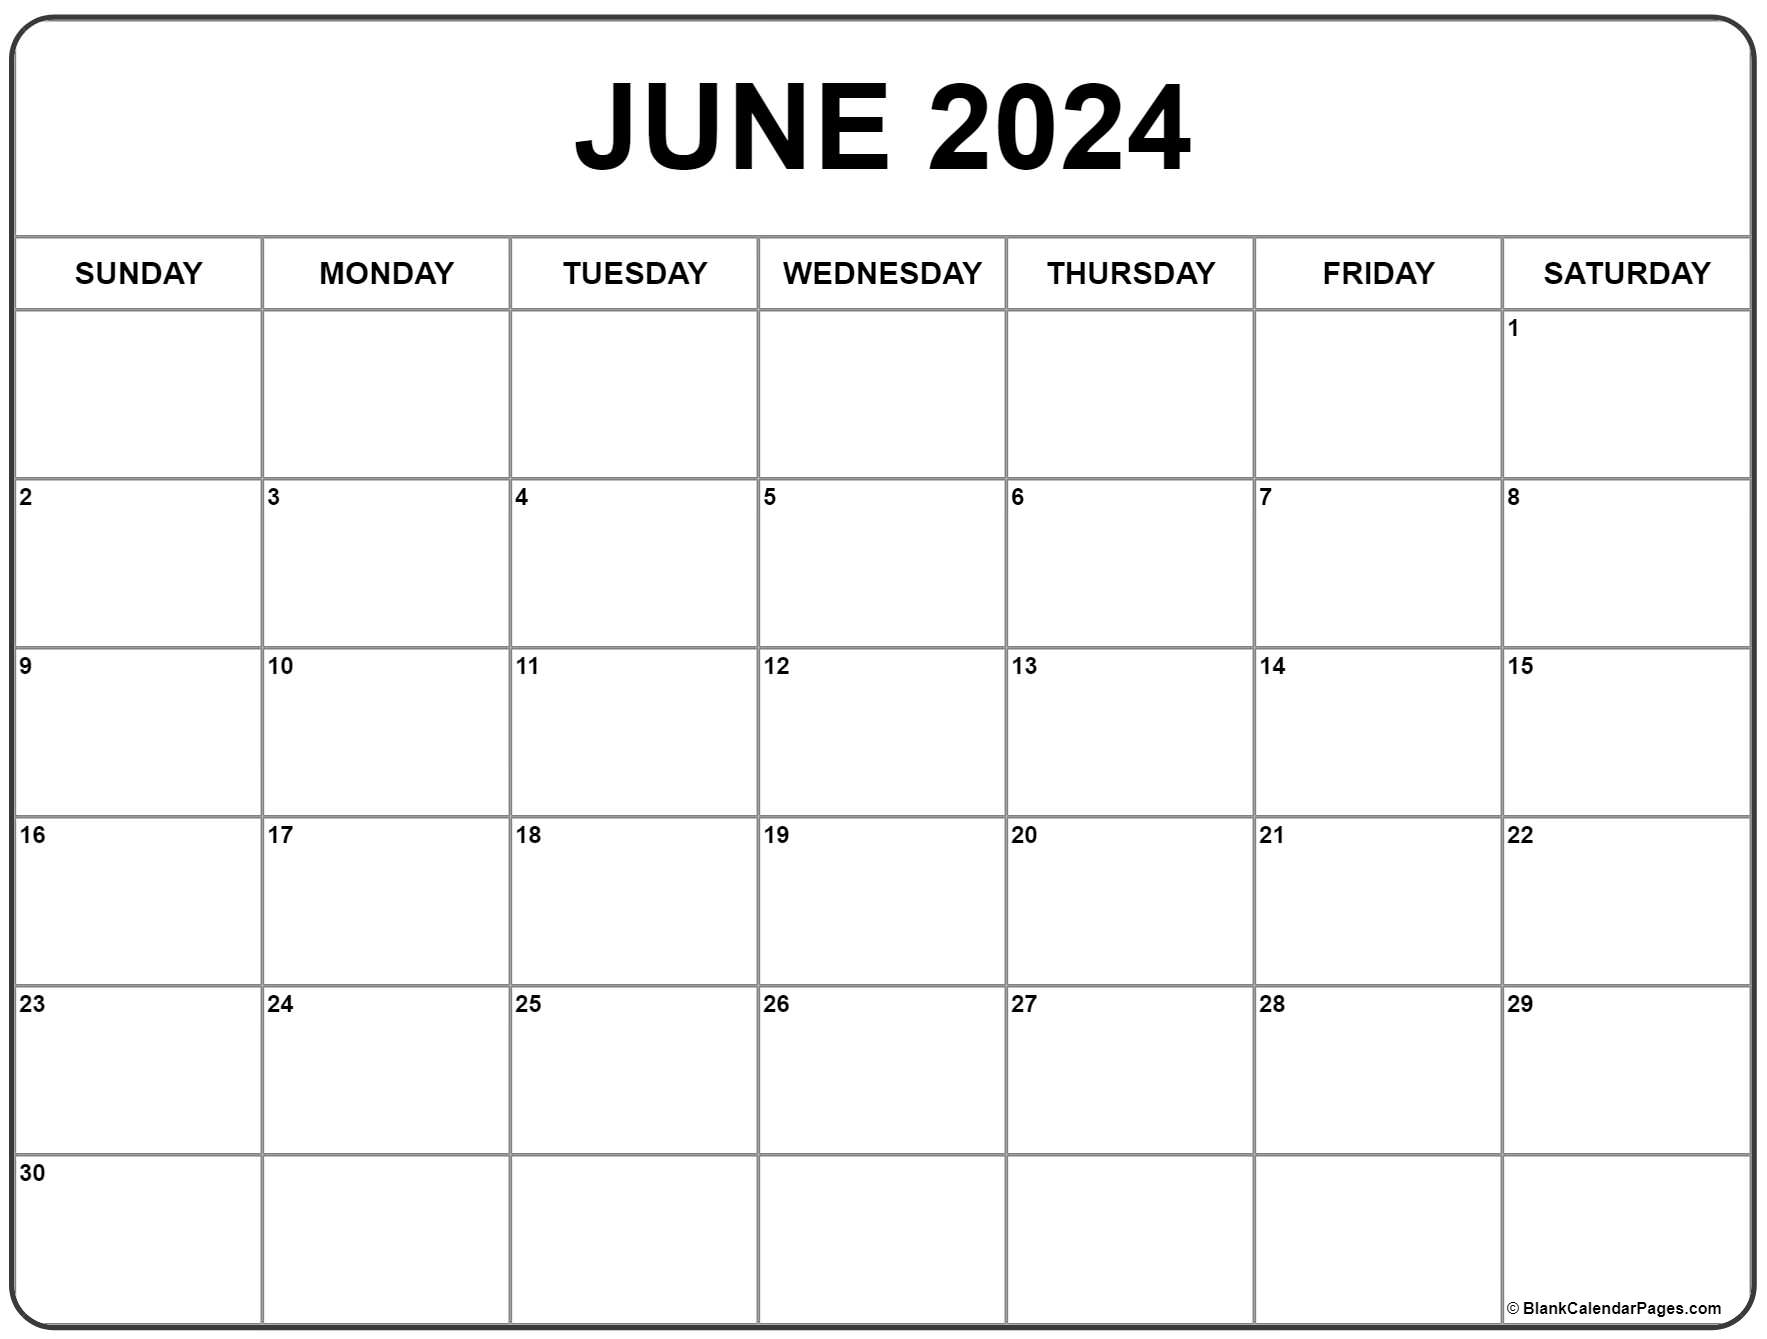 Free Printable June Calendar 2022 June 2022 Calendar | Free Printable Calendar Templates